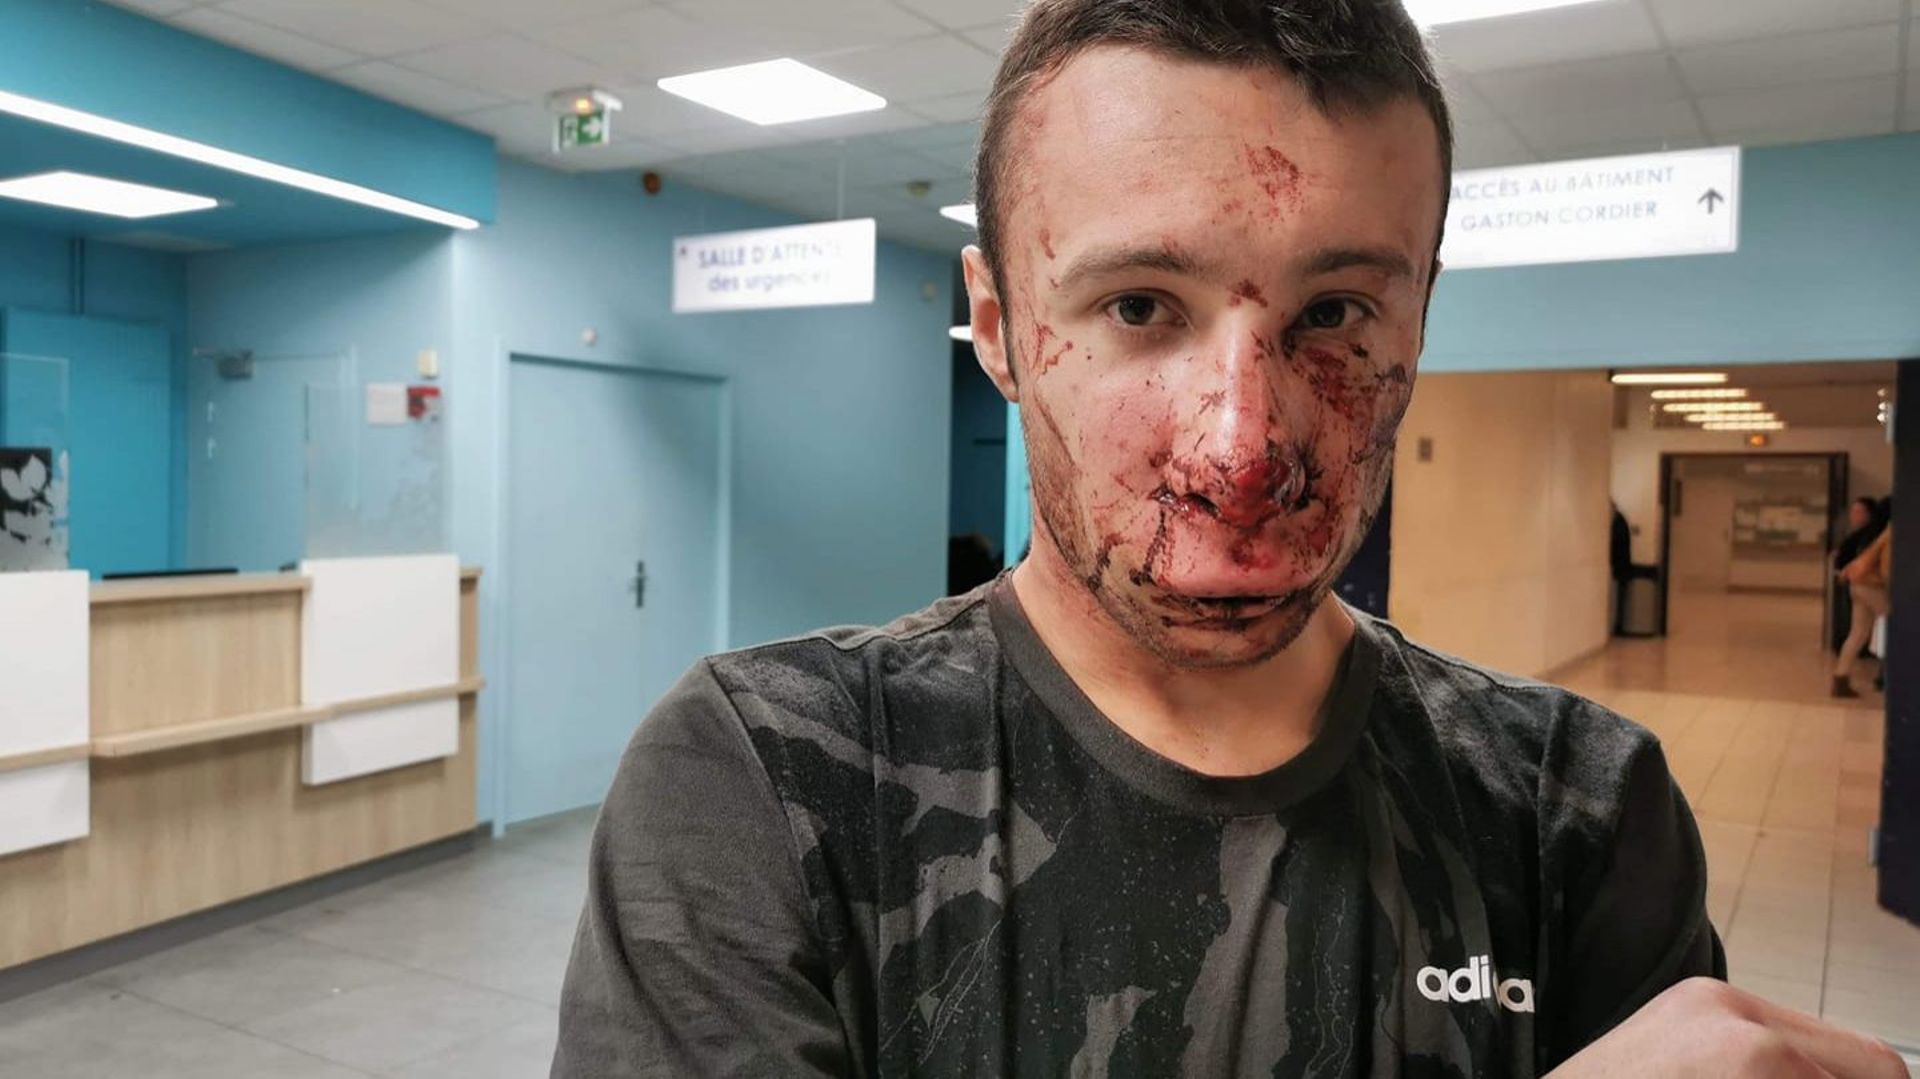 Gilets jaunes: un journaliste atteint au visage par une grenade à Paris, le vrai du faux